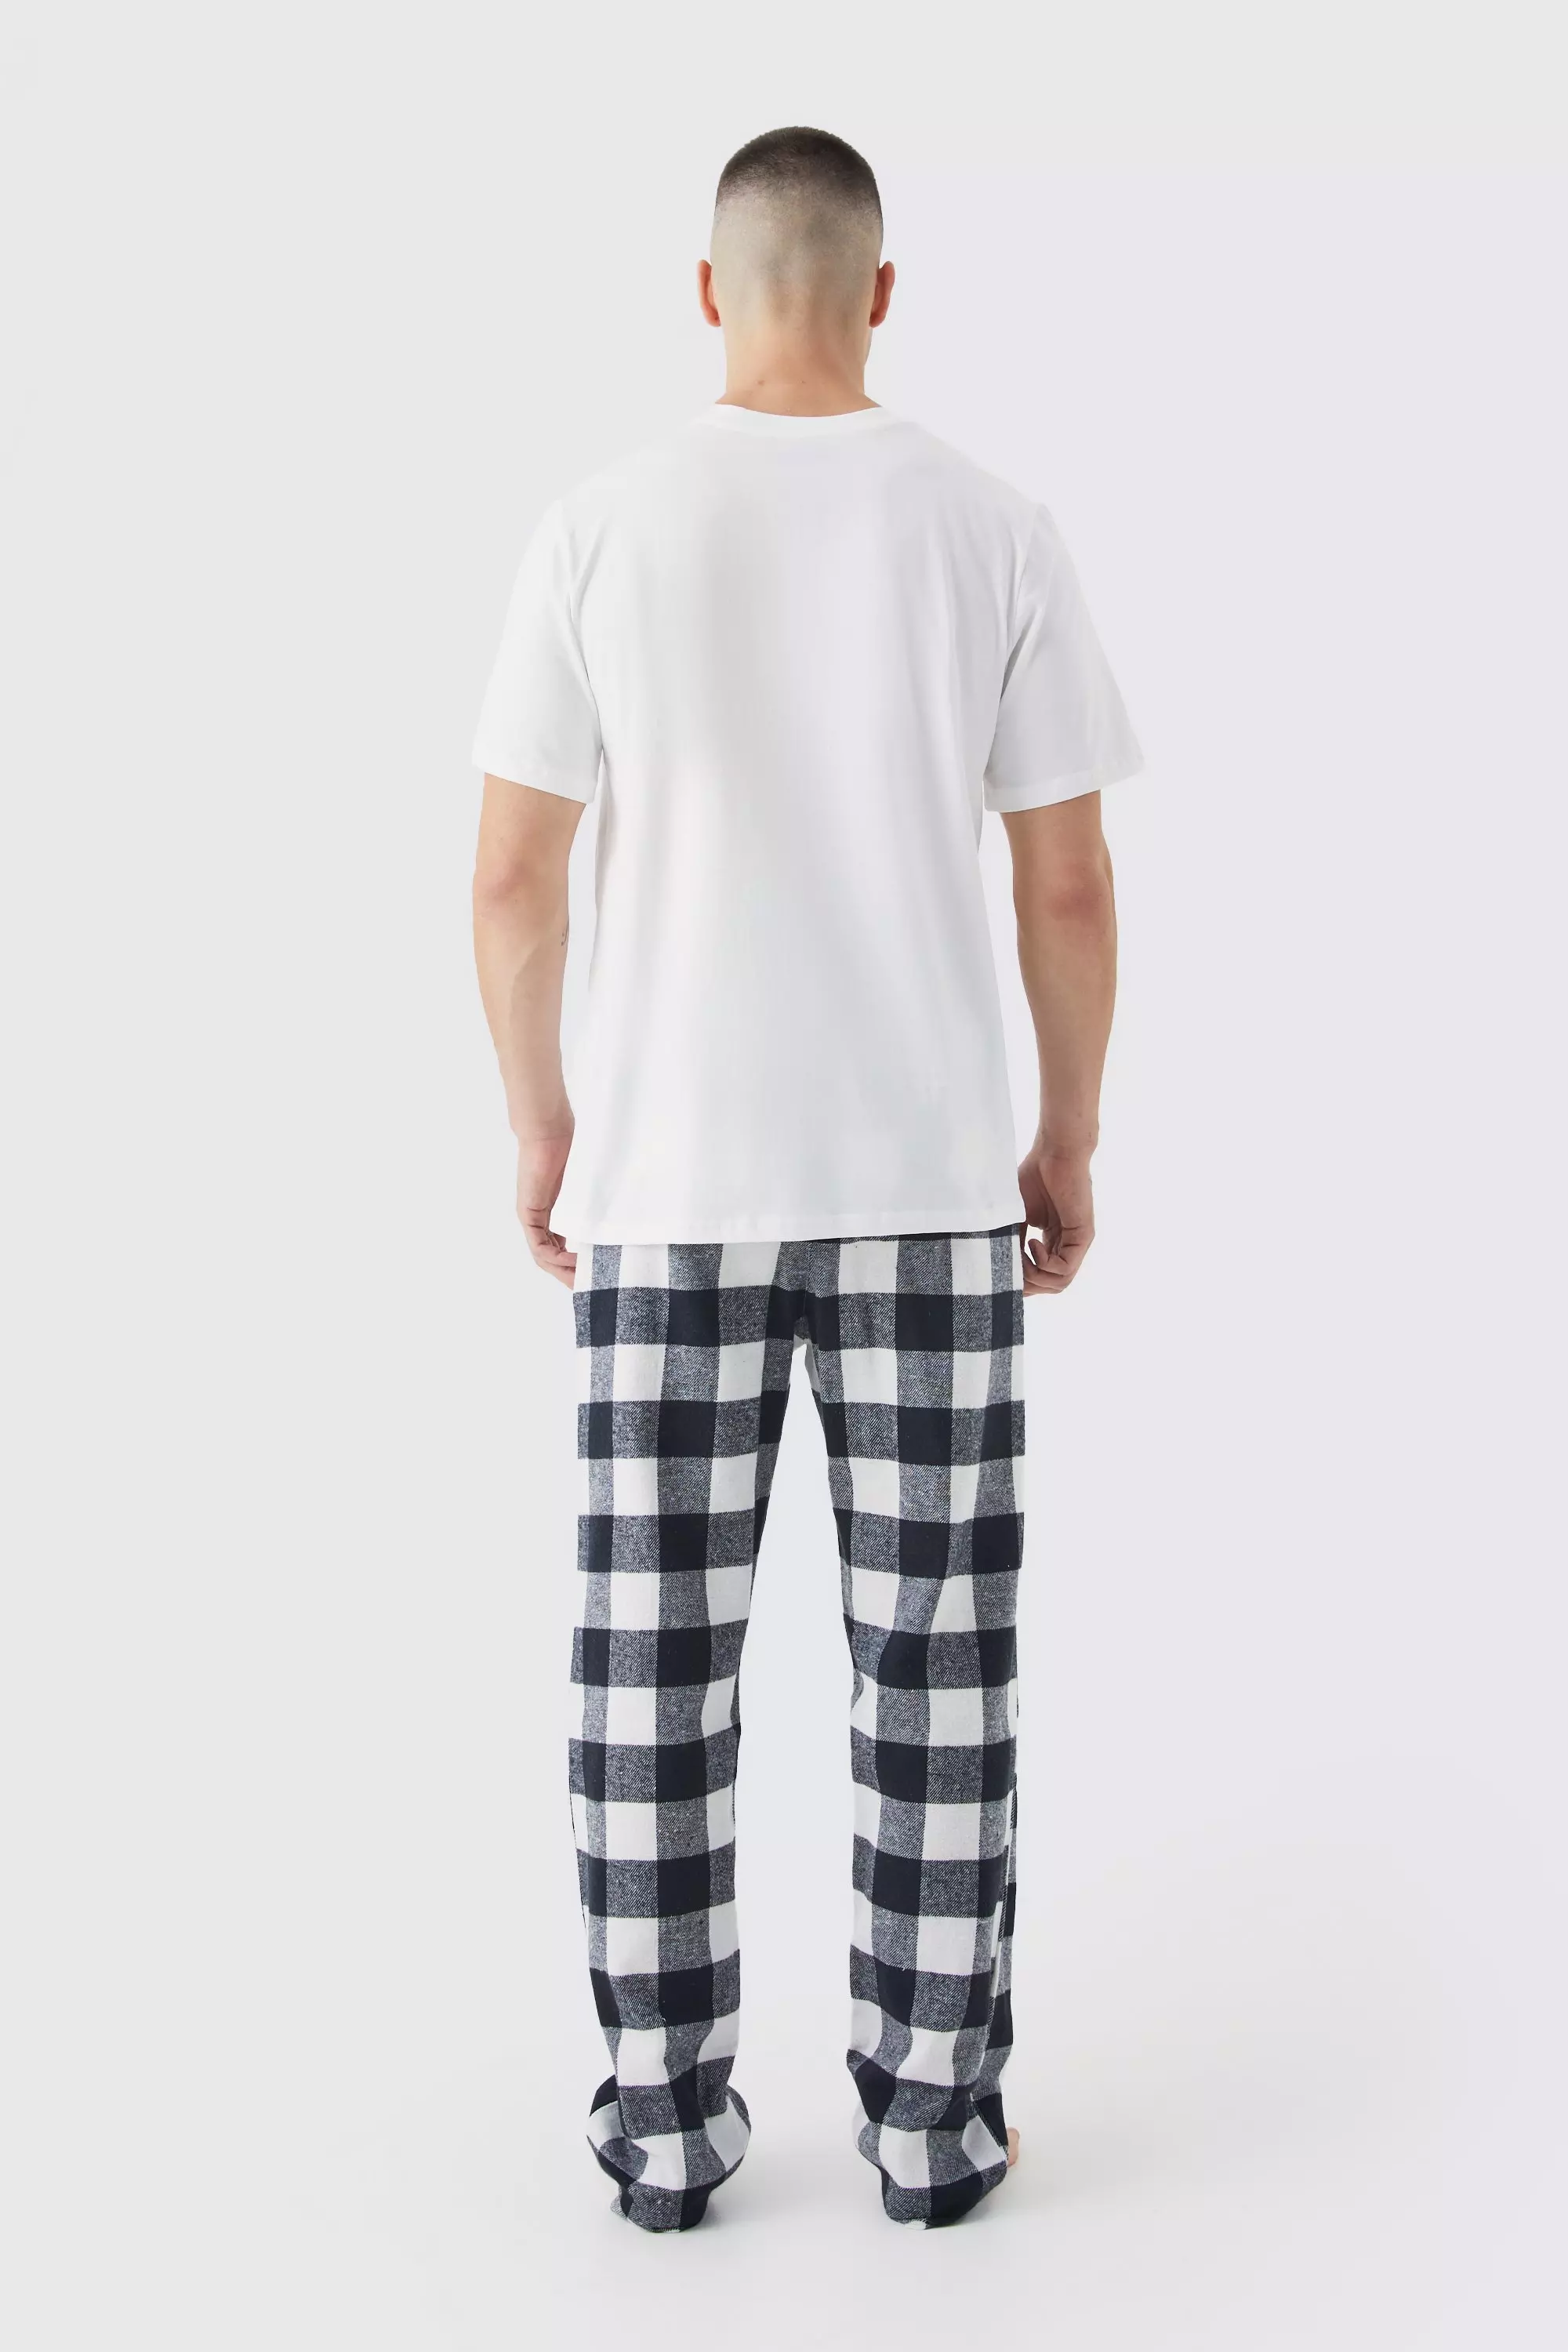 Tall Check Pajama Bottoms And T-shirt Set